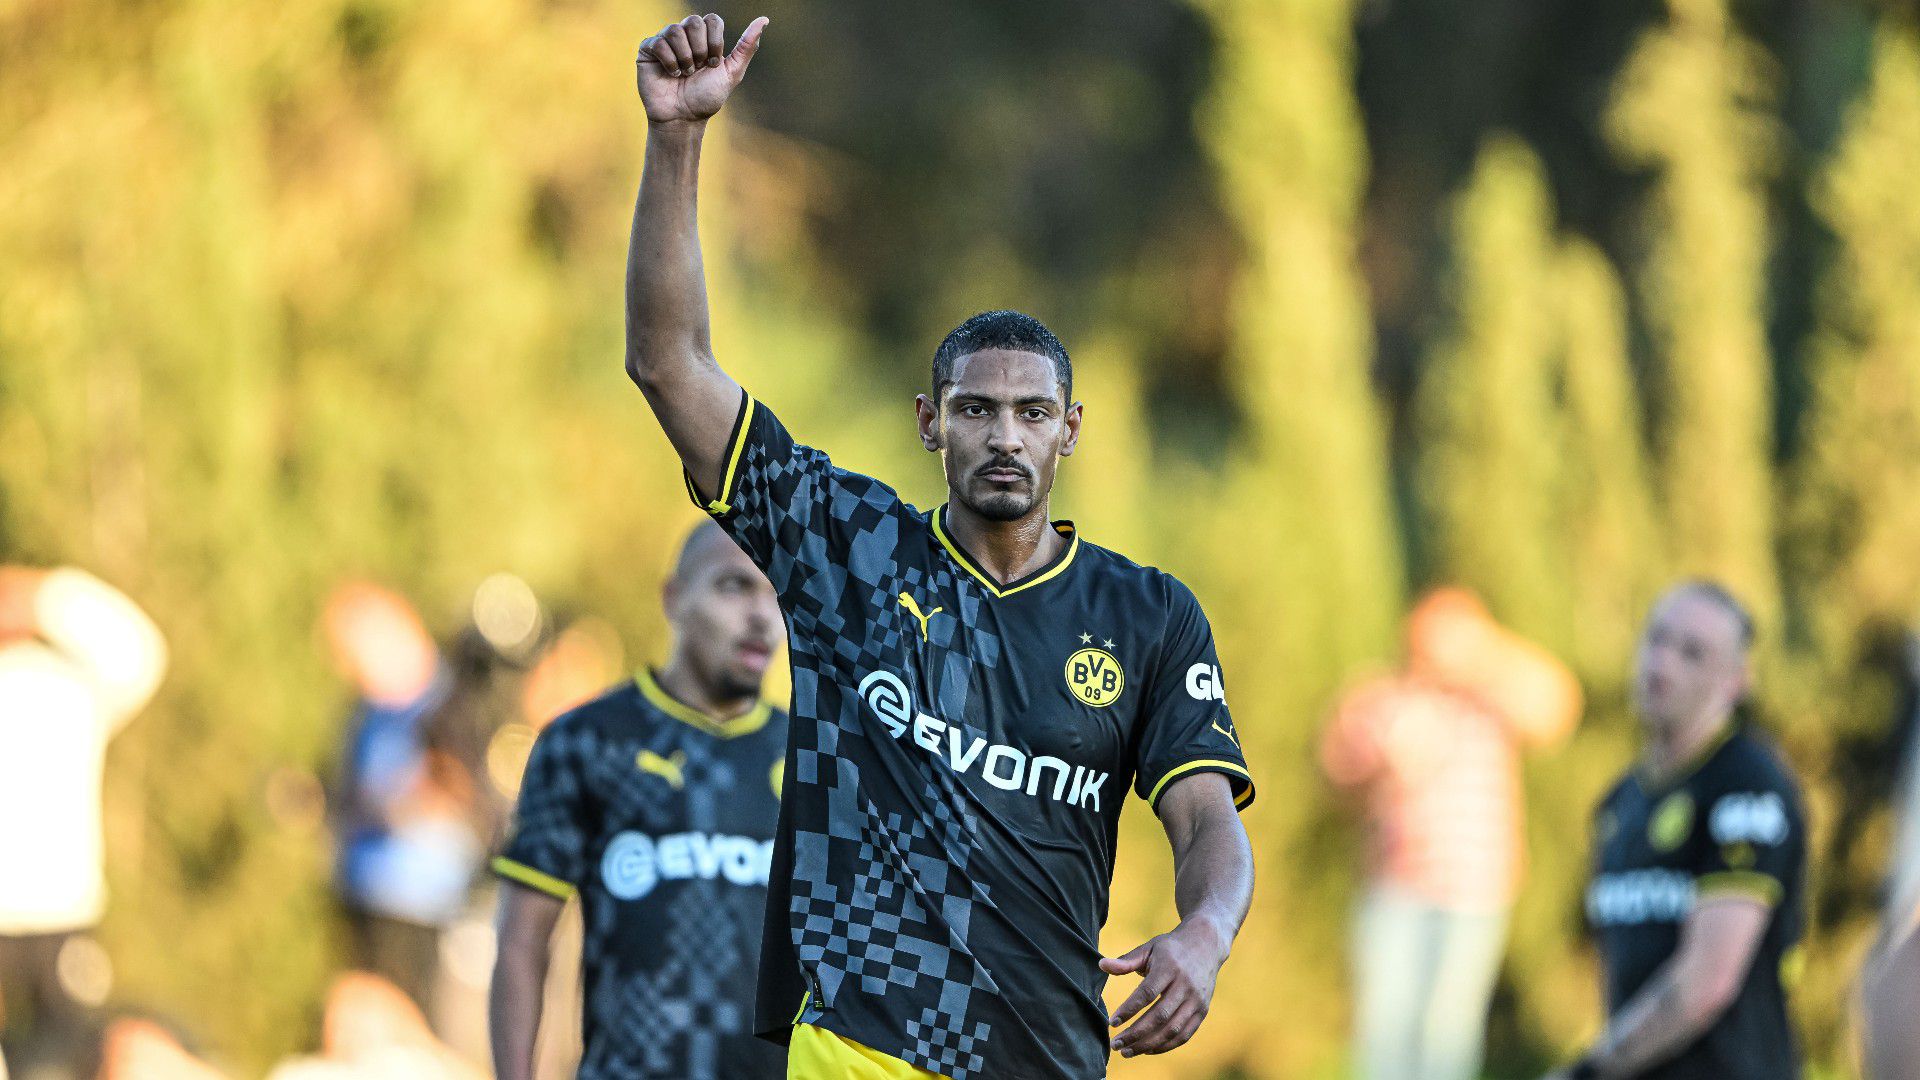 Két műtét és négy kemoterápia után újra meccset játszott a Dortmund csatára – videóval